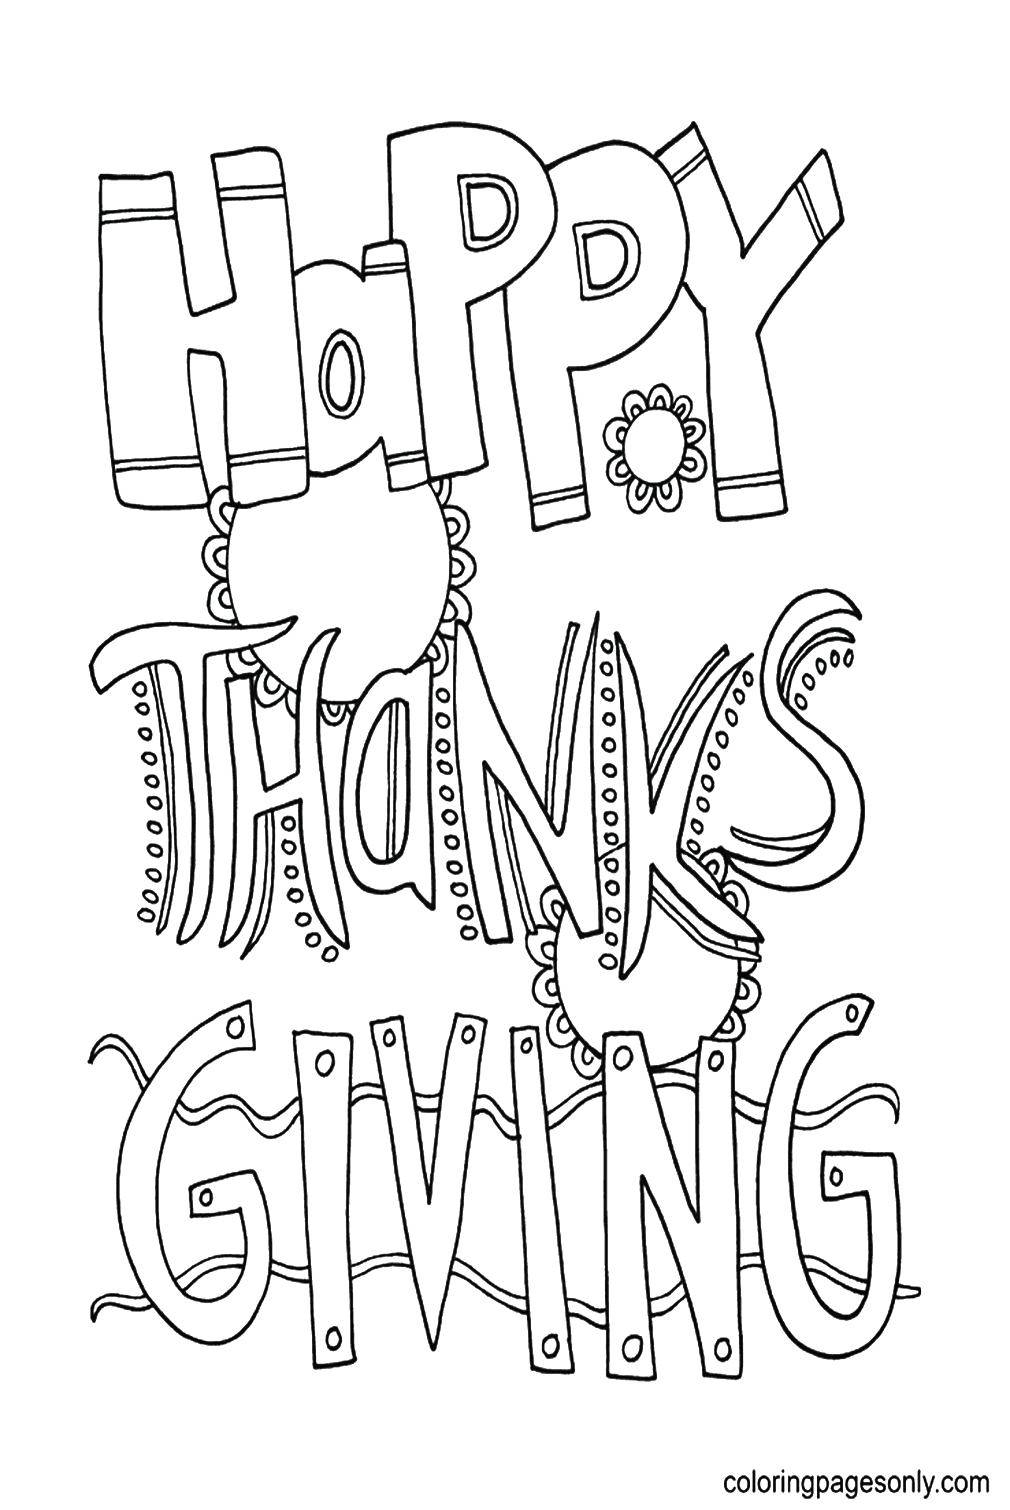 Ação de Graças para impressão gratuita do Dia de Ação de Graças